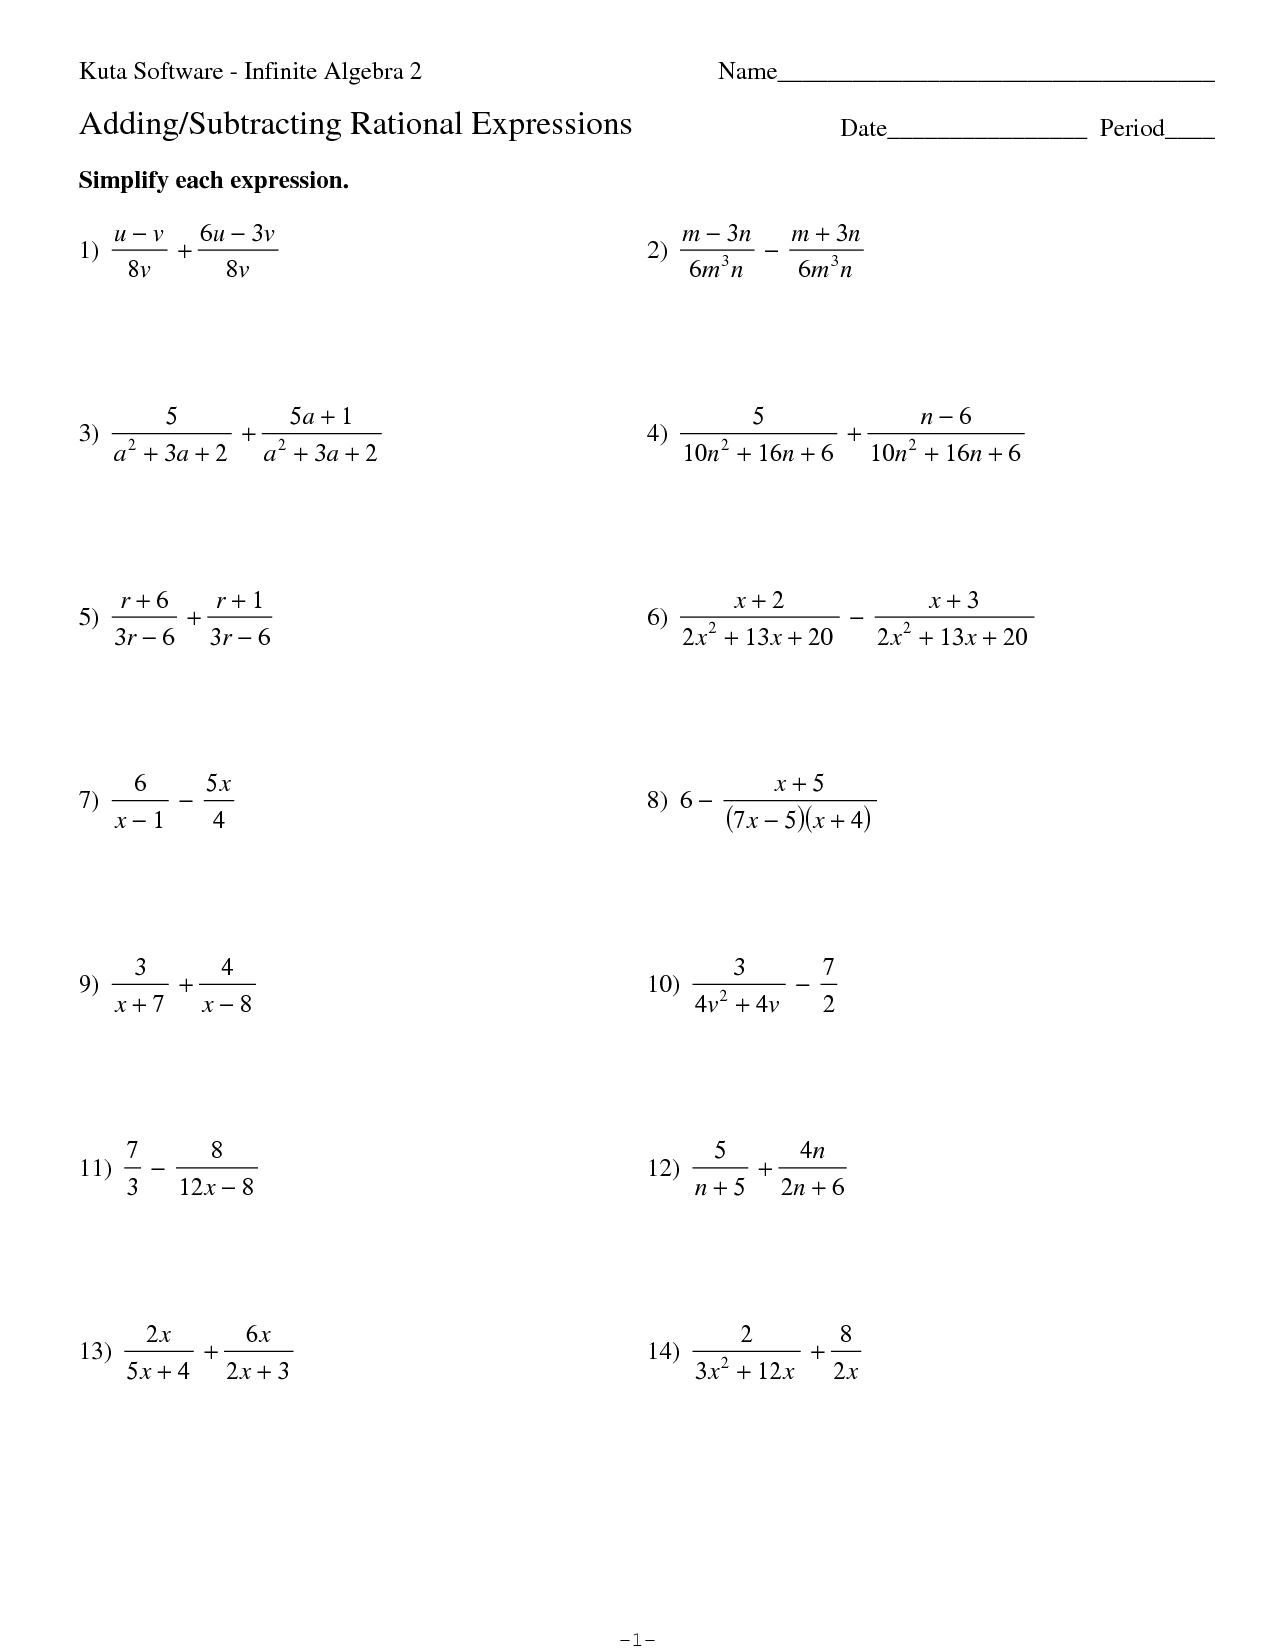 14-kuta-software-infinite-algebra-2-worksheet-worksheeto